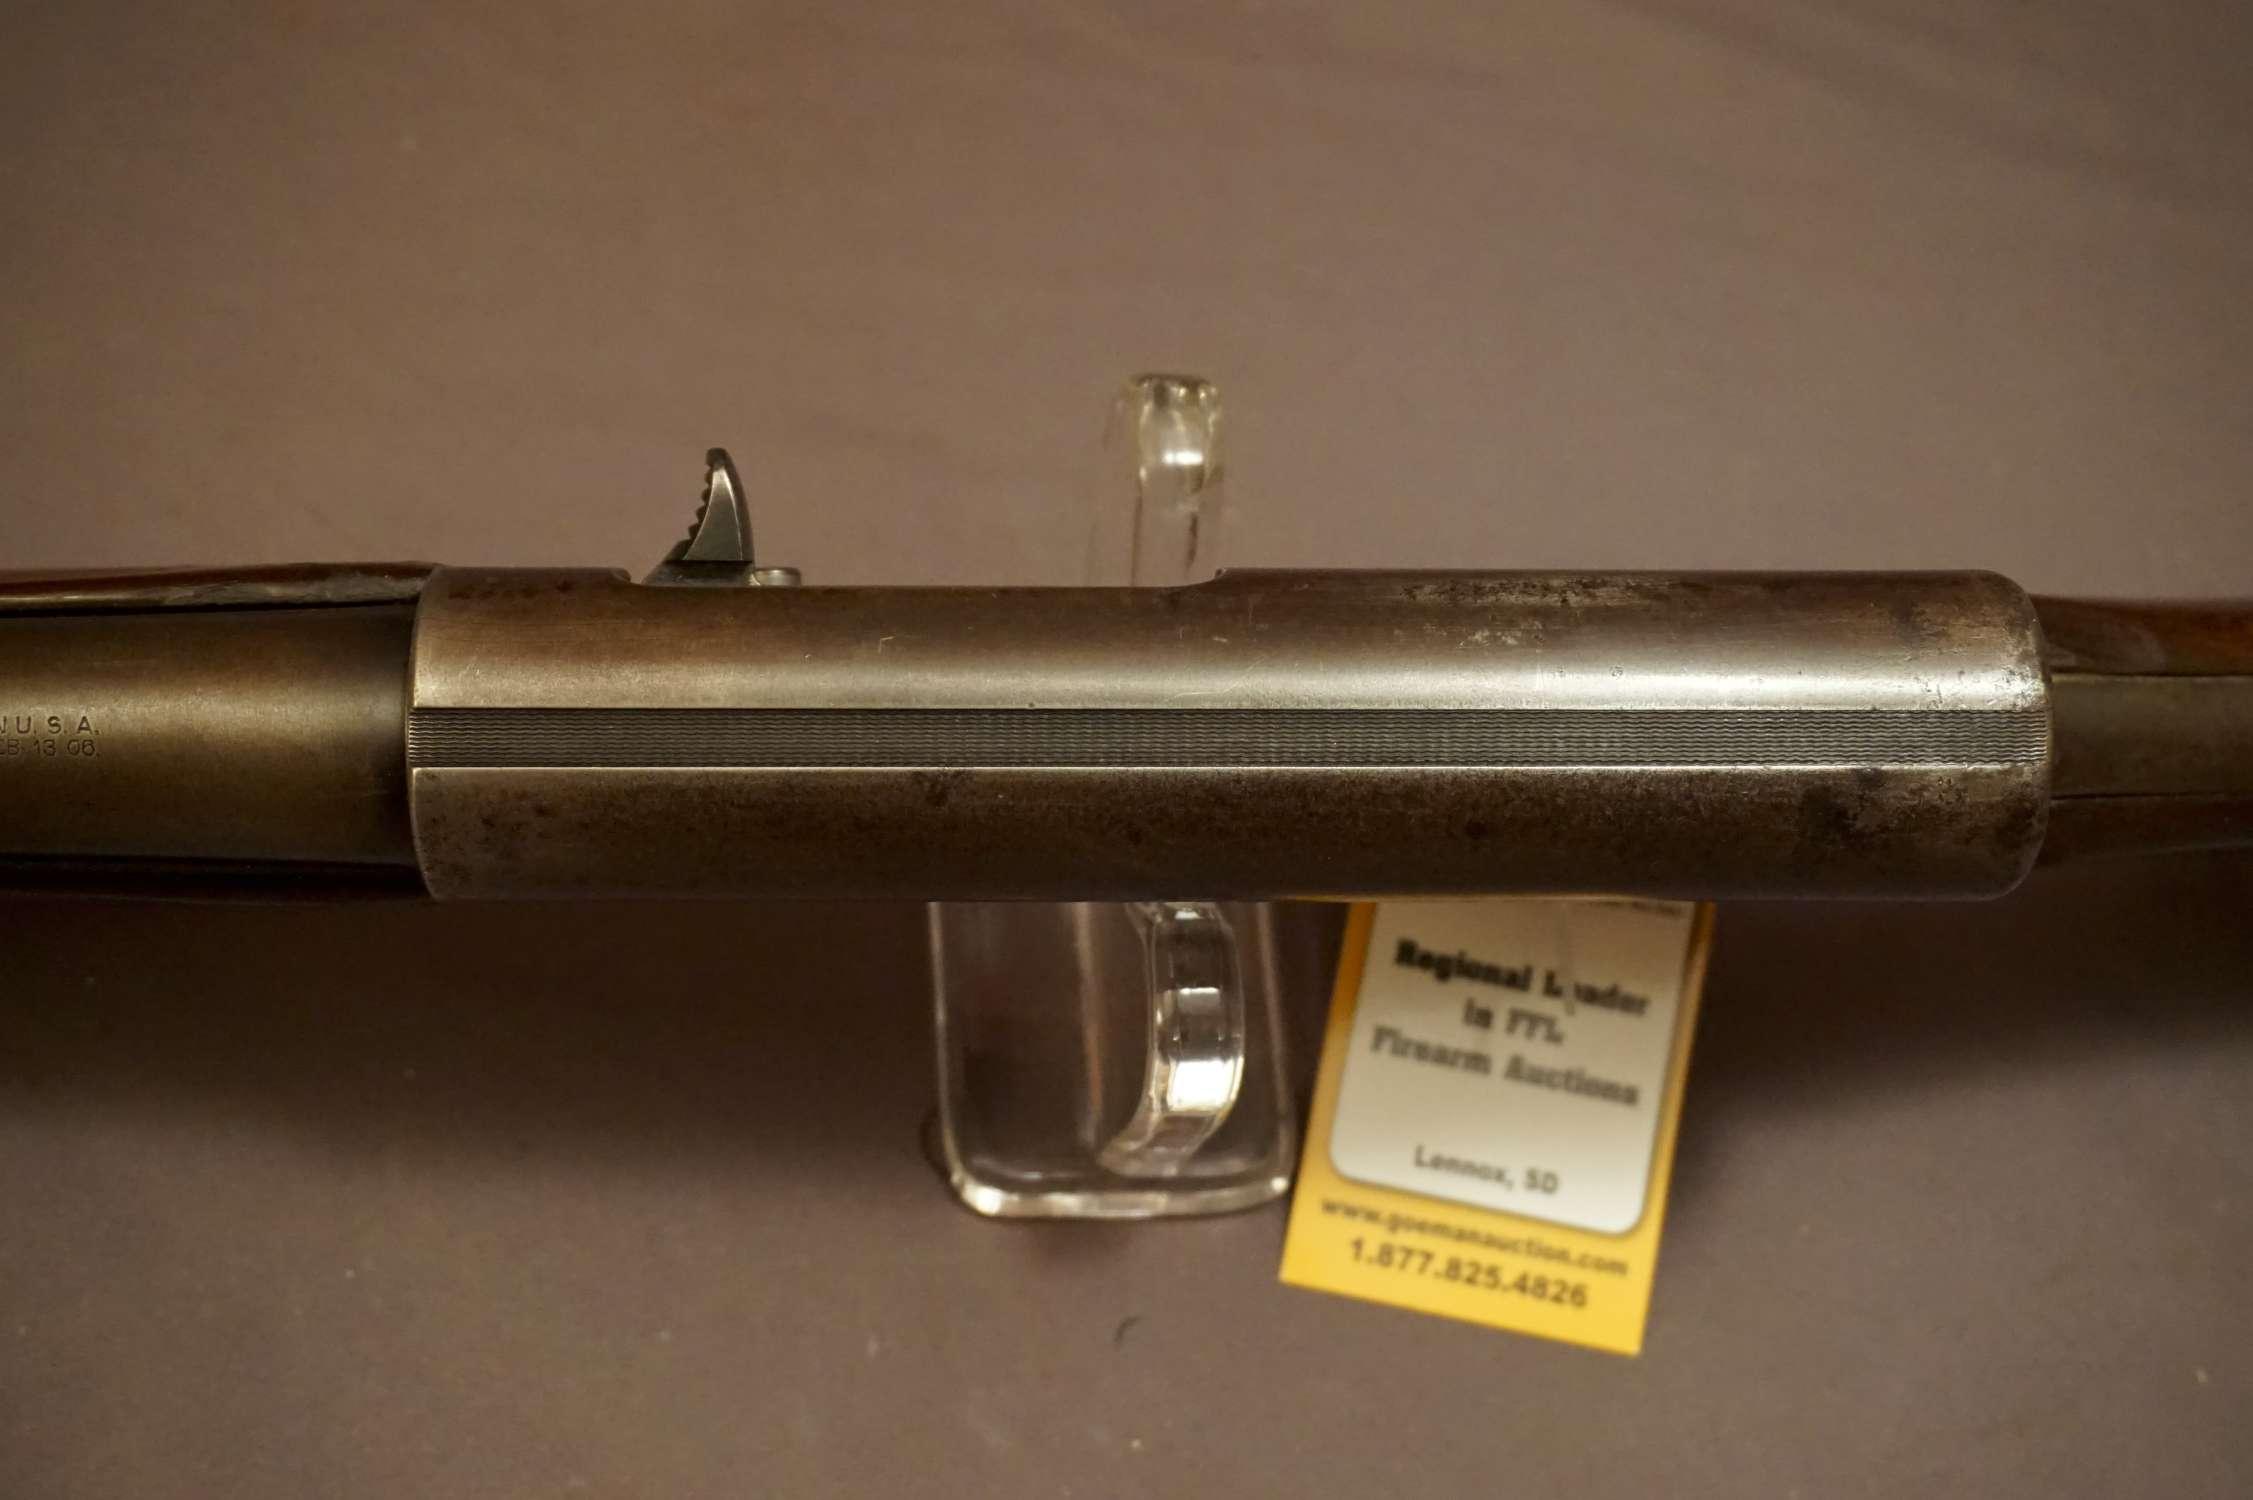 Remington M. 11 12ga Semi-auto Shotgun